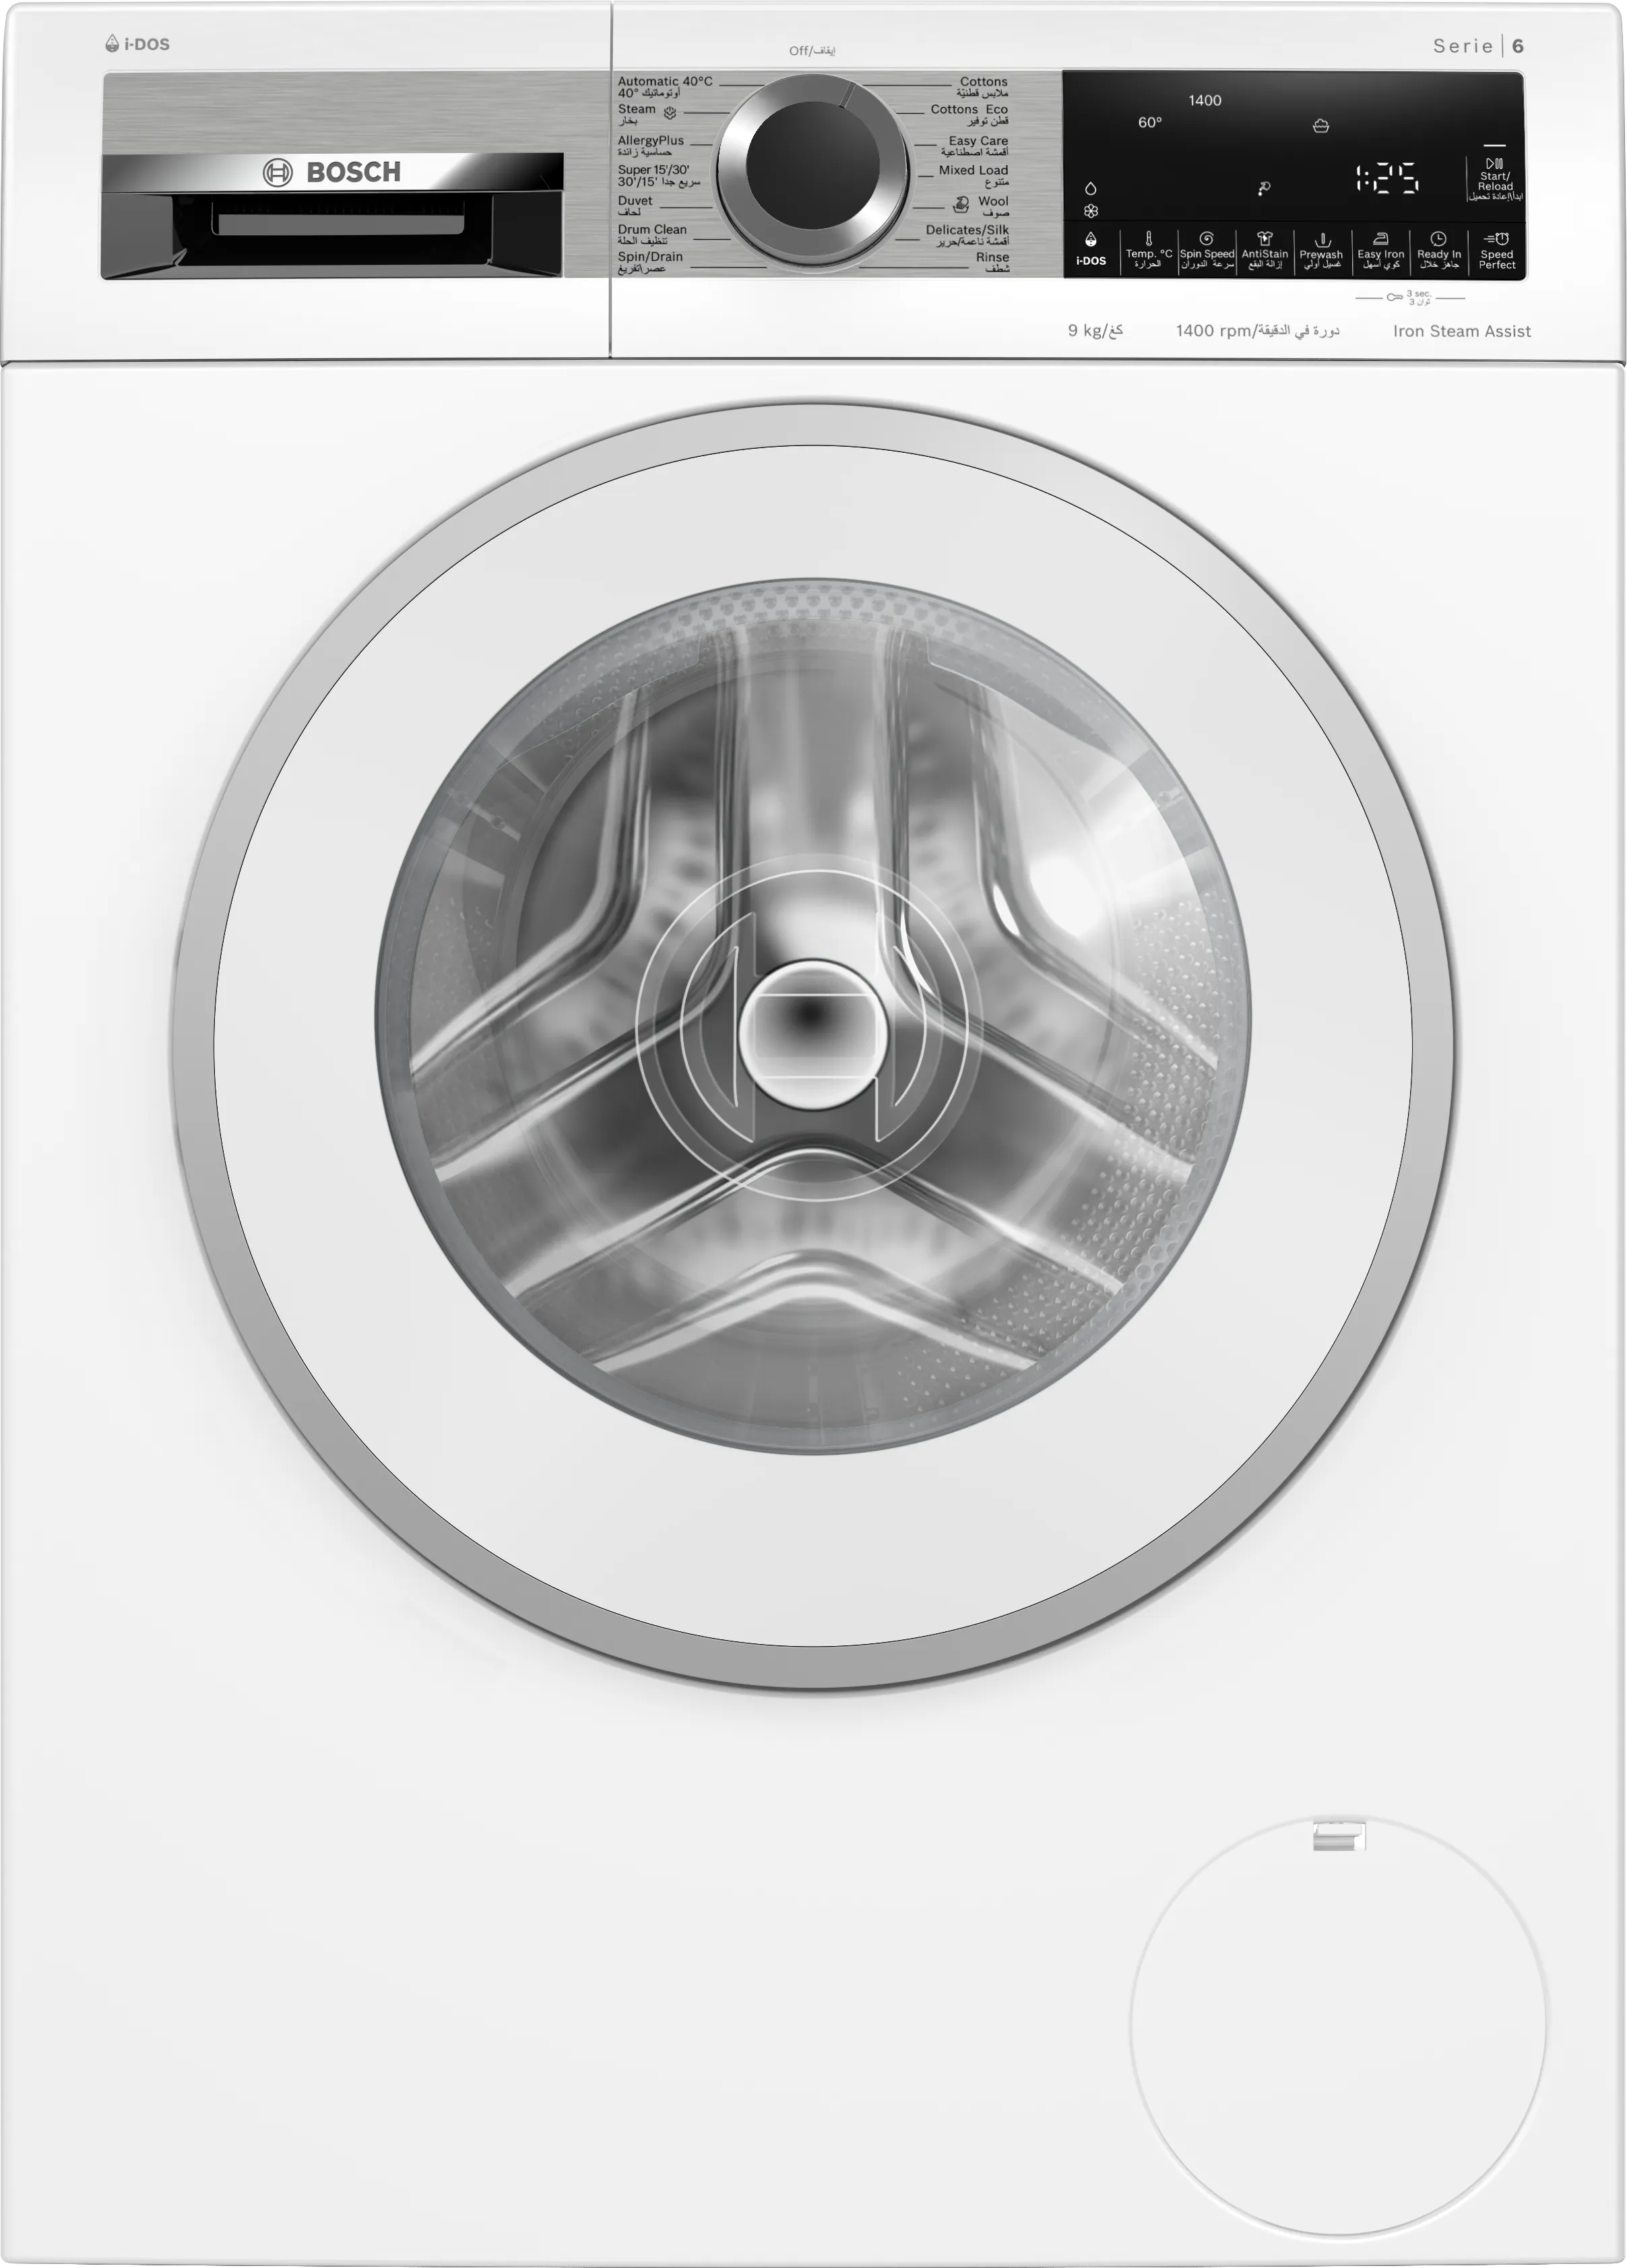 Series 6 washing machine, front loader 9 kg 1400 rpm 